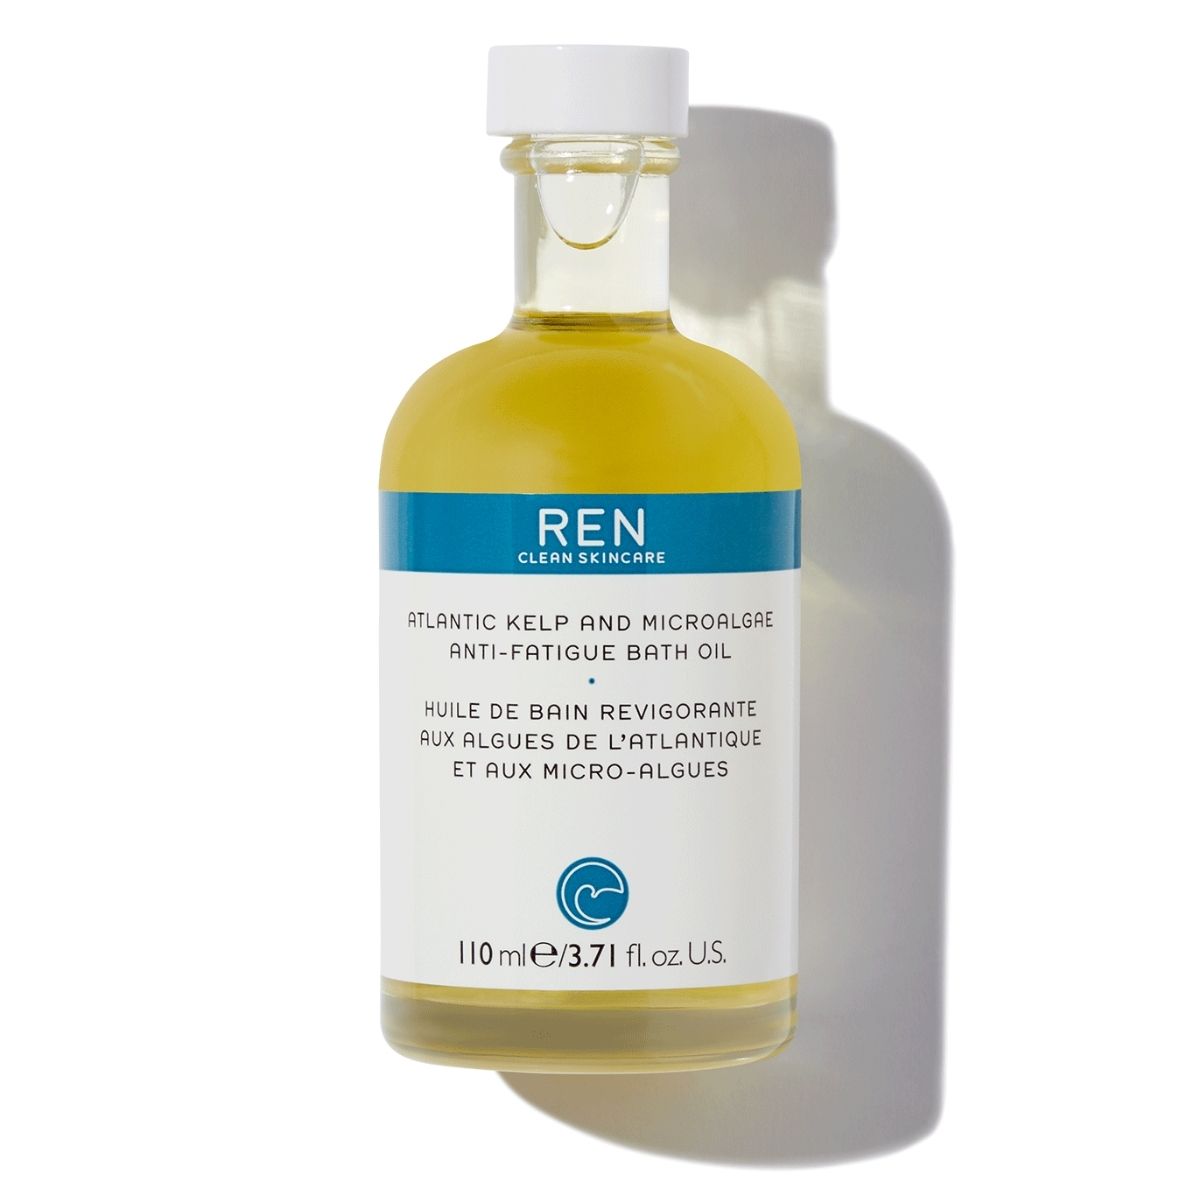 REN Atlantic Kelp And Microalgae Anti-Fatigue Bath Oil.